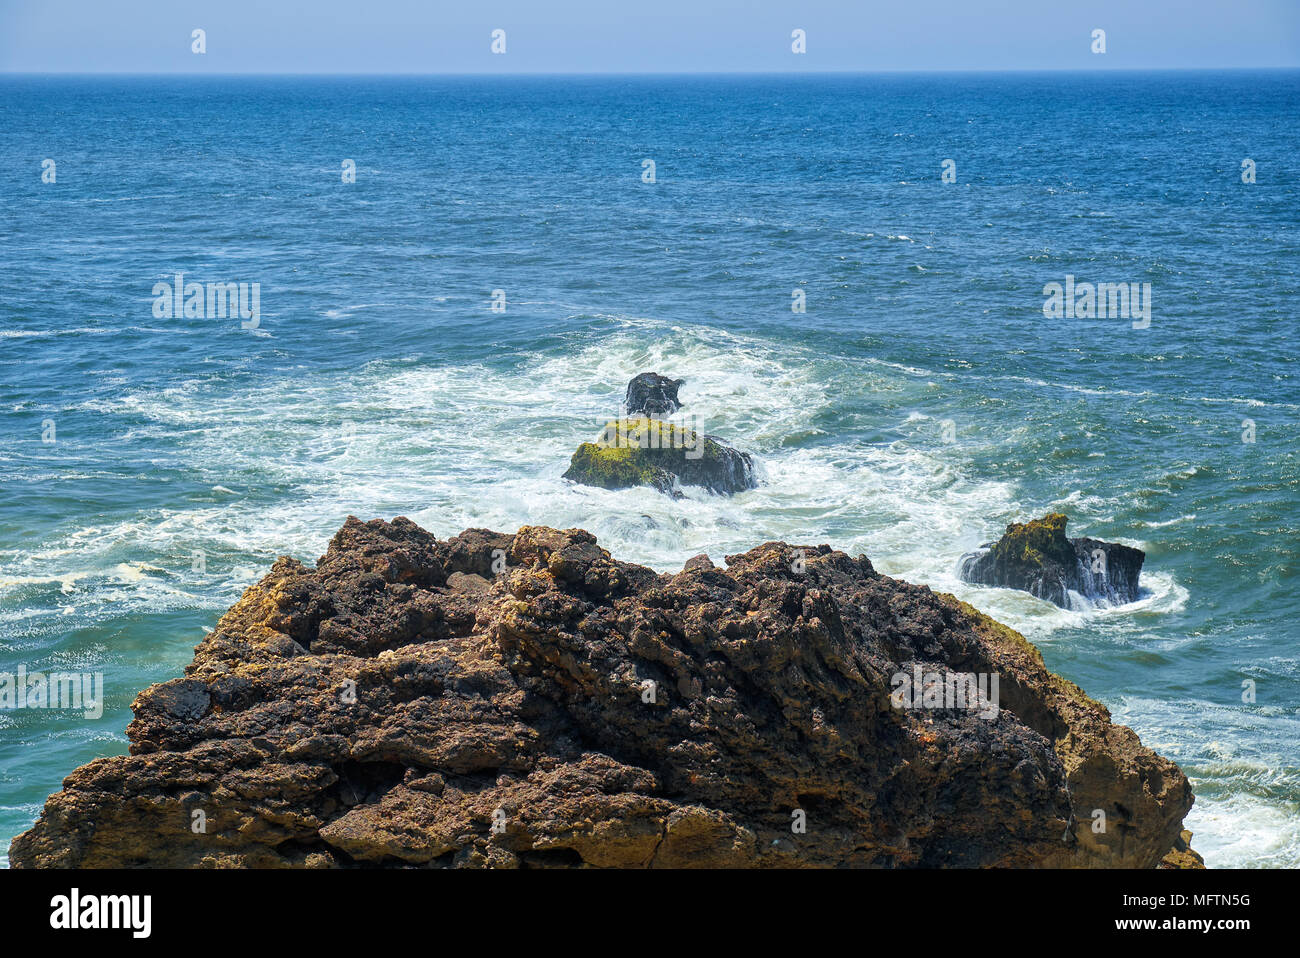 Felsen und Wellen der Brandung in den Ozean in der Nähe von Farol De Nazare Küste, in der Nähe der portugiesischen Stadt Nazare, Portugal Stockfoto